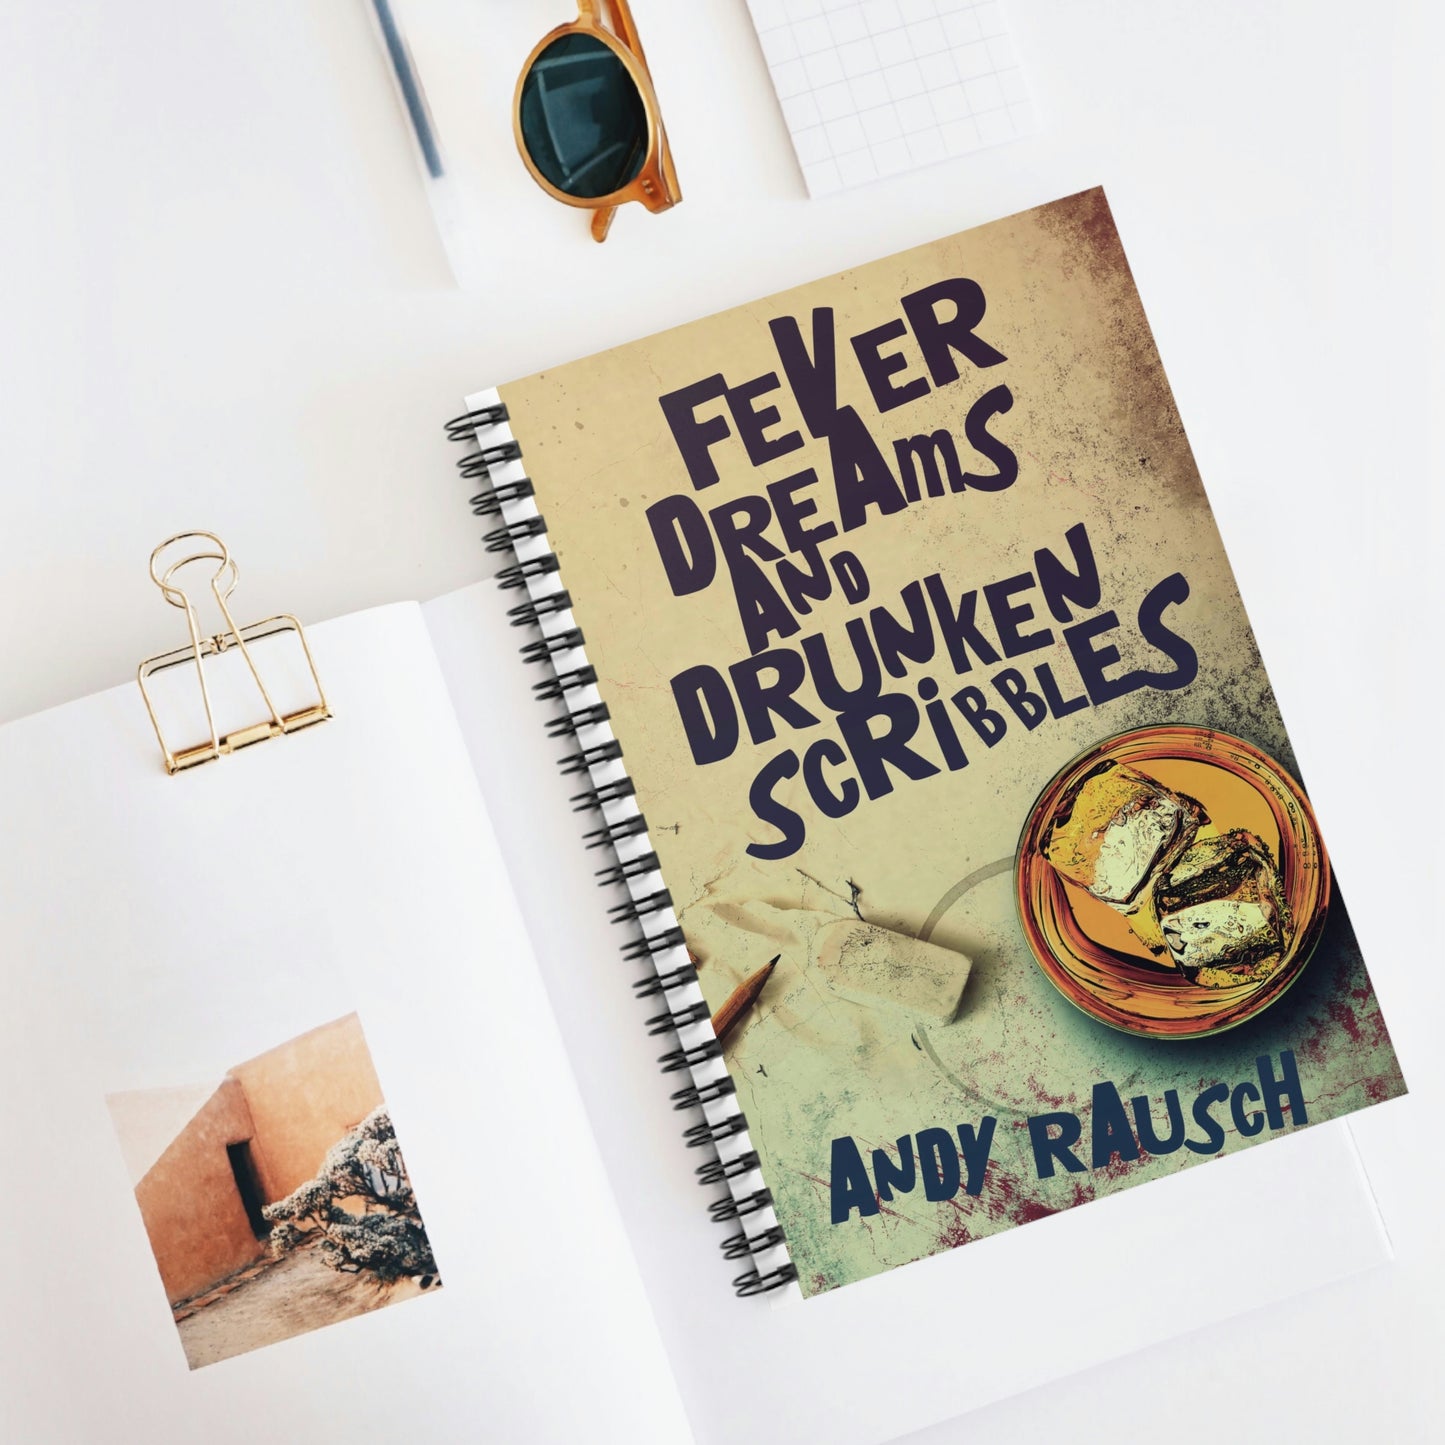 Fever Dreams and Drunken Scribbles - Spiral Notebook